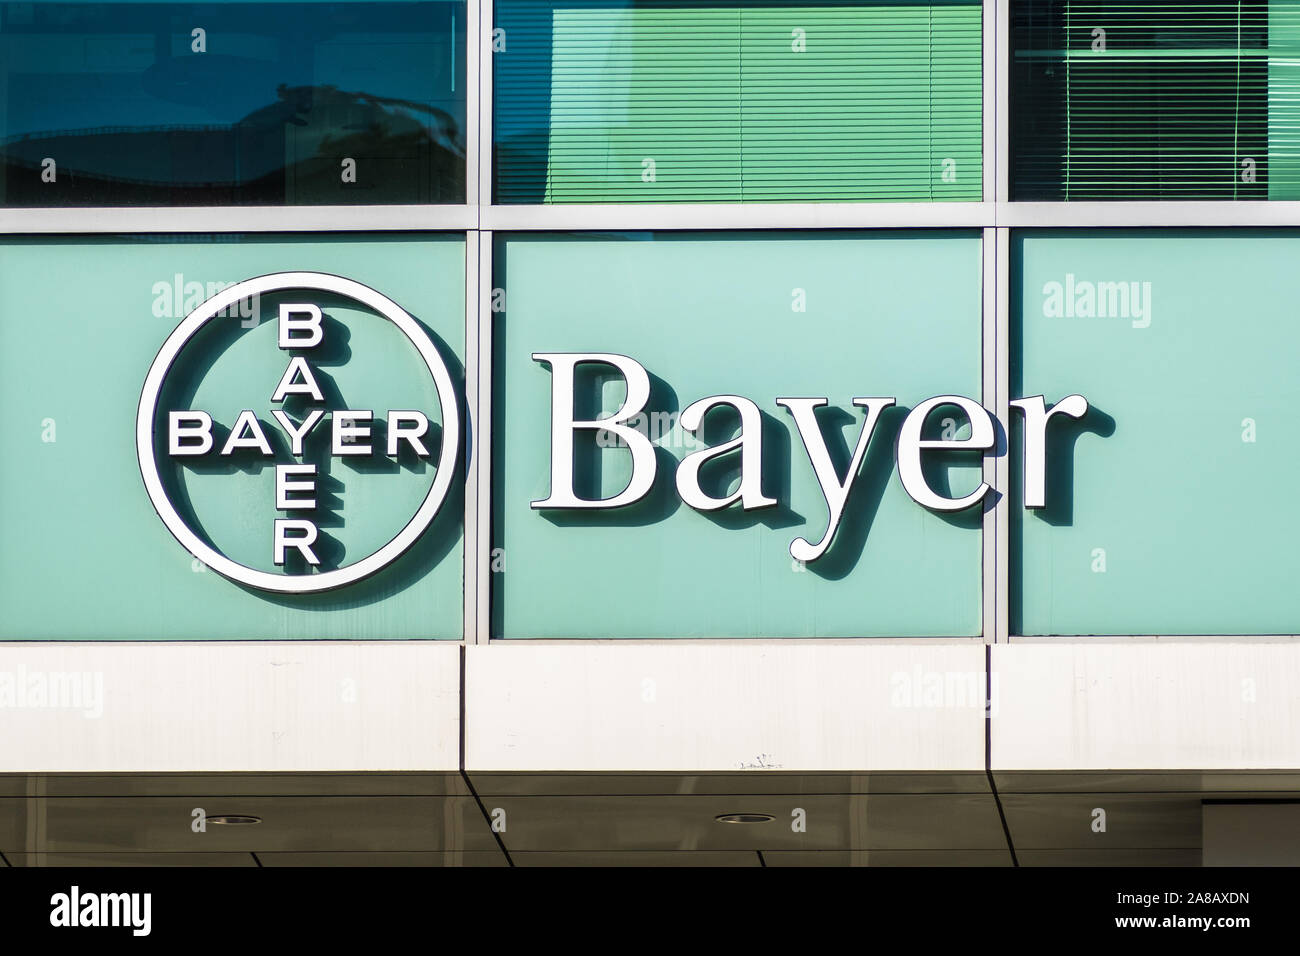 Novembre 2, 2019 San Francisco / CA / STATI UNITI D'AMERICA - Bayer uffici situati in Mission Bay Distretto; Bayer AG è una multinazionale tedesca e farmaceutici life scien Foto Stock